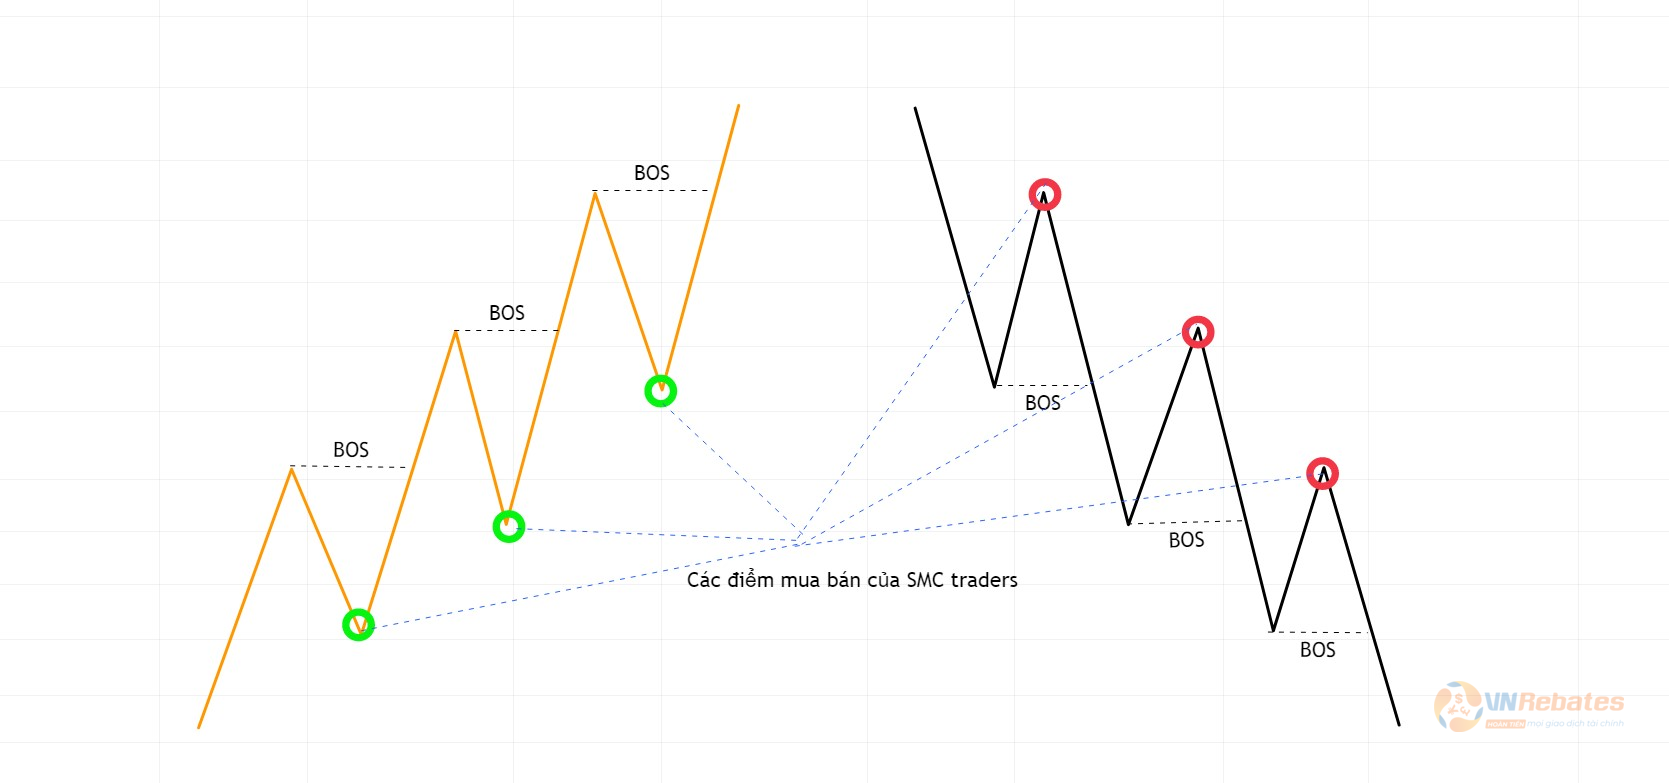 Hình 7. Điểm mua bán theo tín hiệu BOS của SMC traders